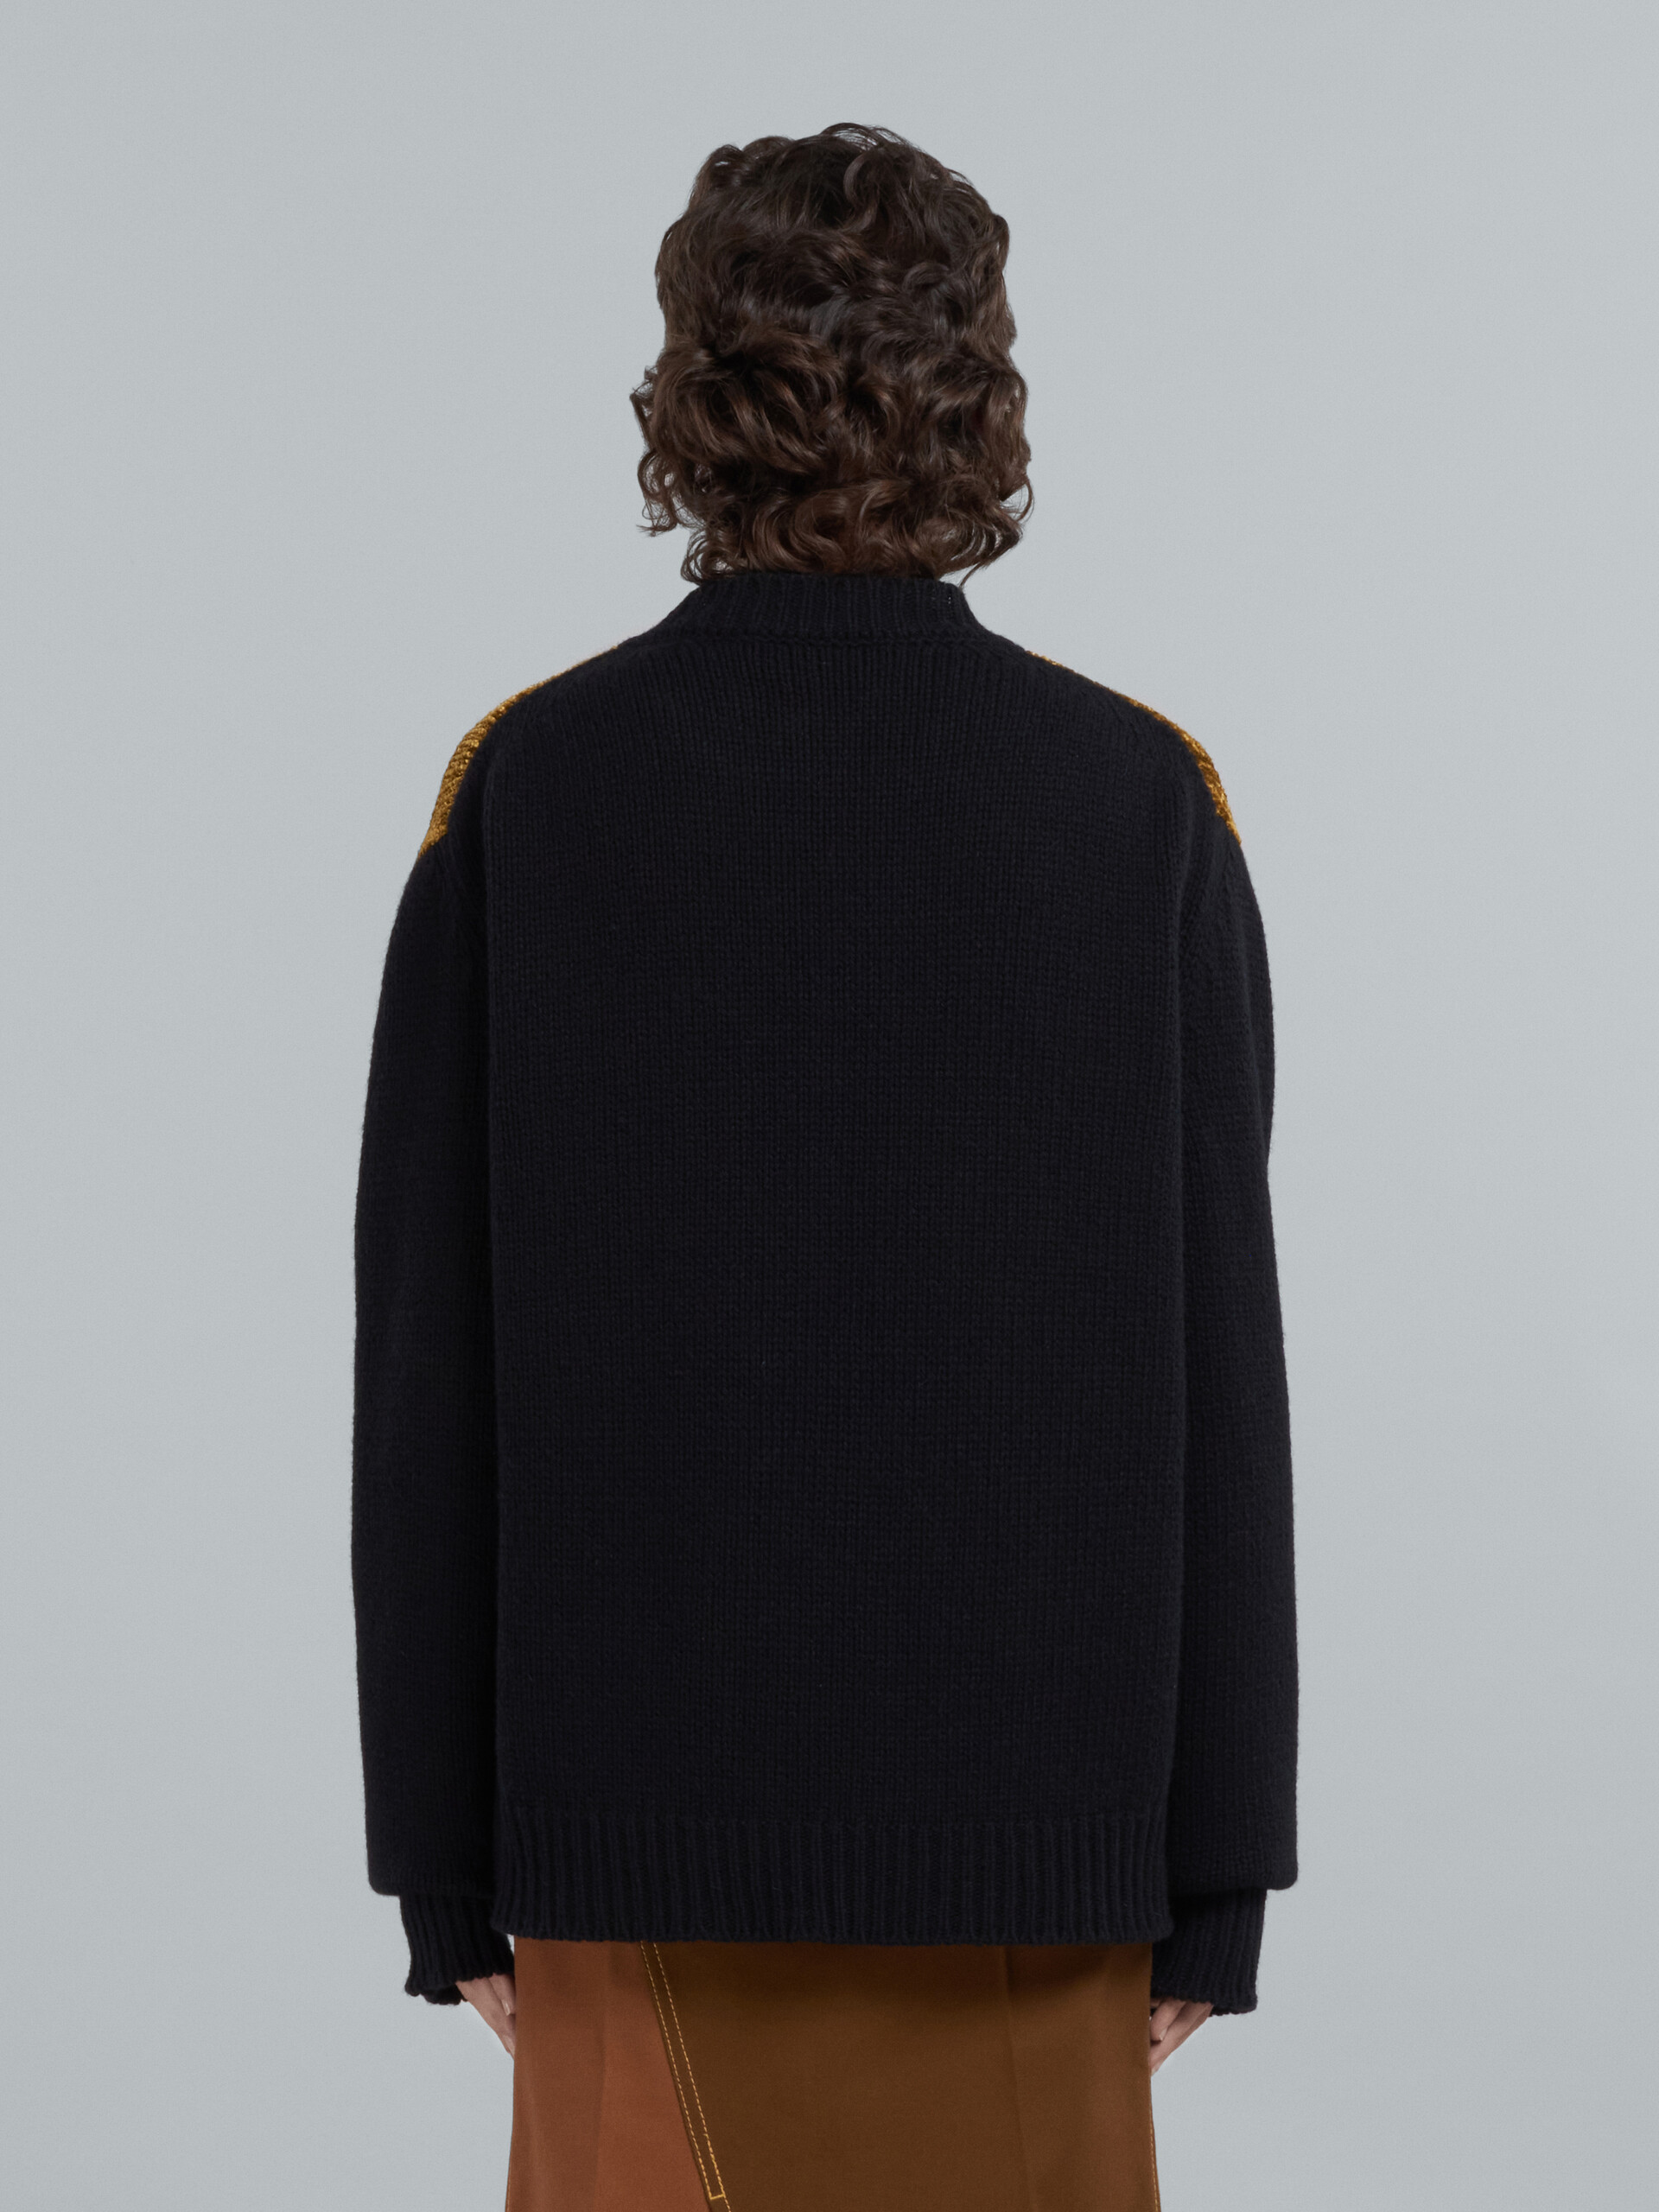 MARNI x CARHARTT WIP - Jersey de cuello redondo de lana negra y chenilla con logotipo - jerseys - Image 3